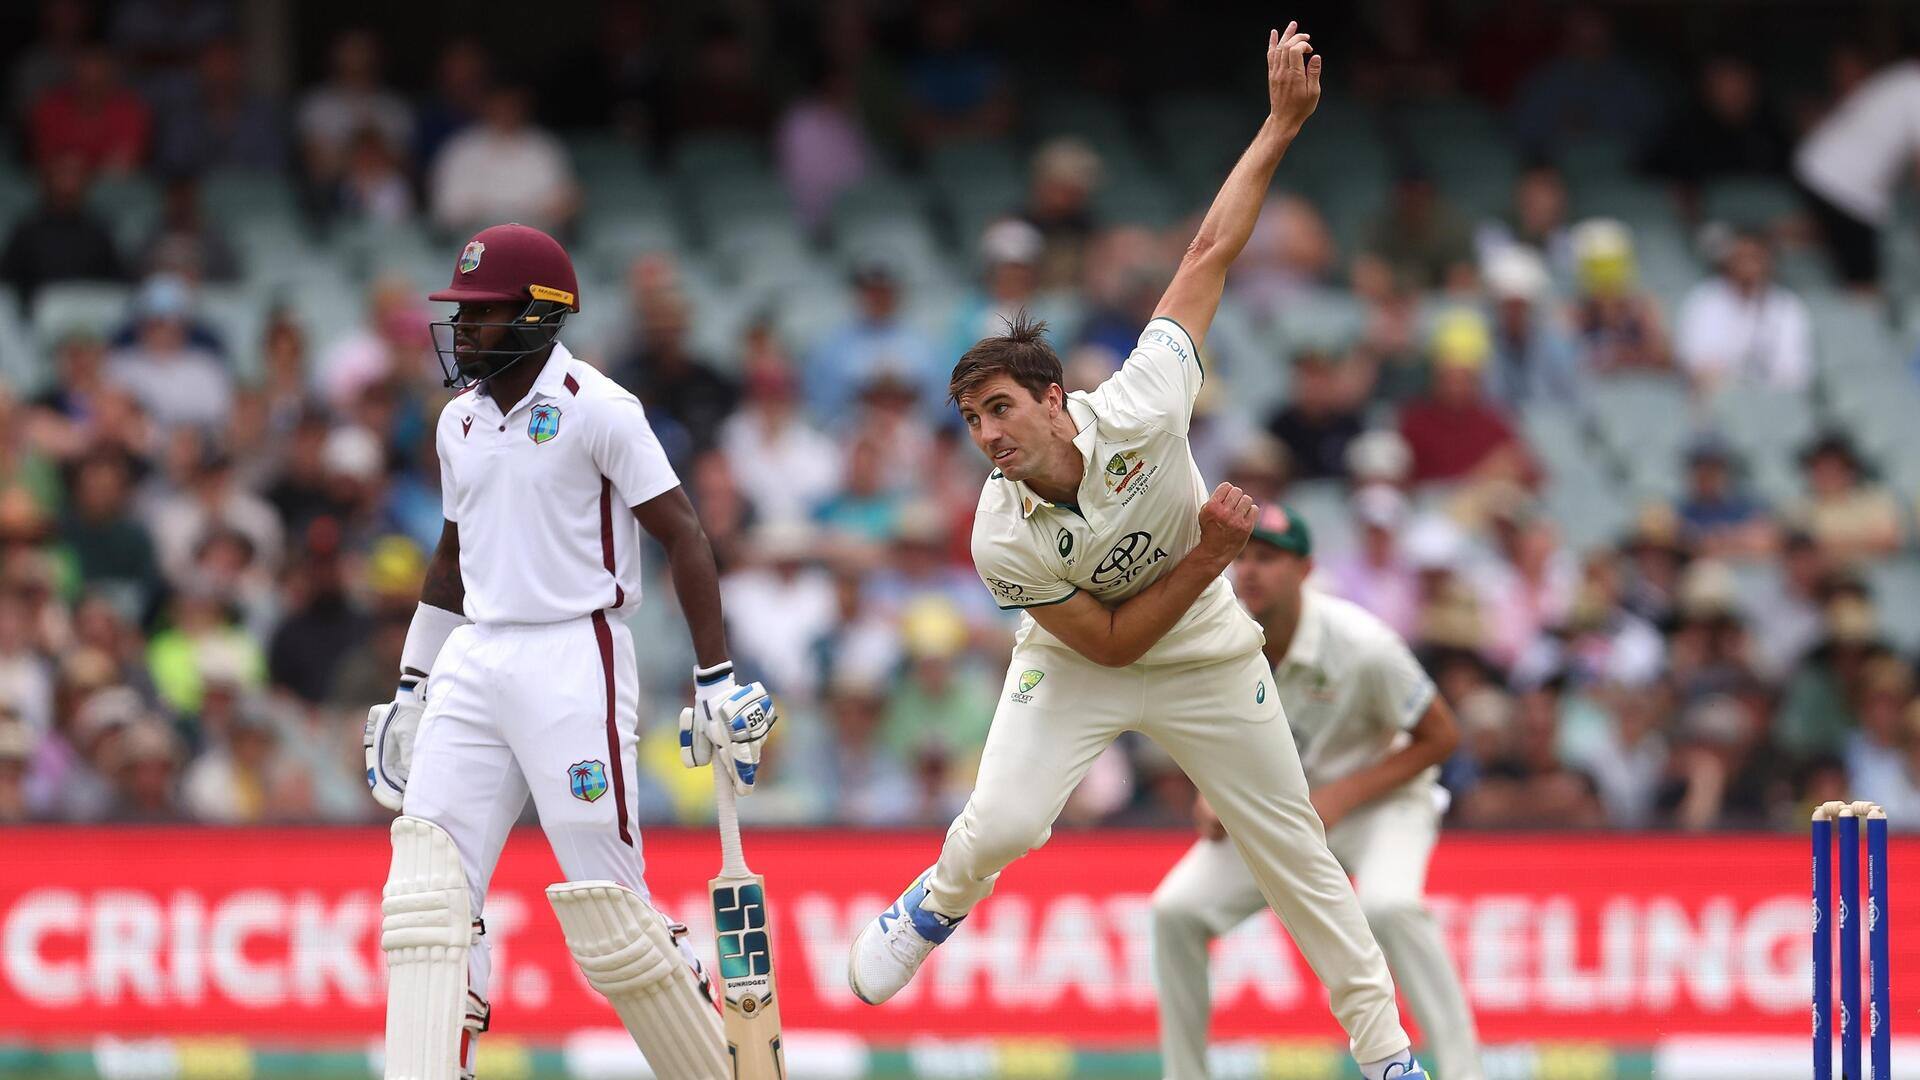 एडिलेड टेस्ट: वेस्टइंडीज के खिलाफ ऑस्ट्रेलिया की मैच में पकड़ मजबूत, ऐसा रहा दूसरा दिन